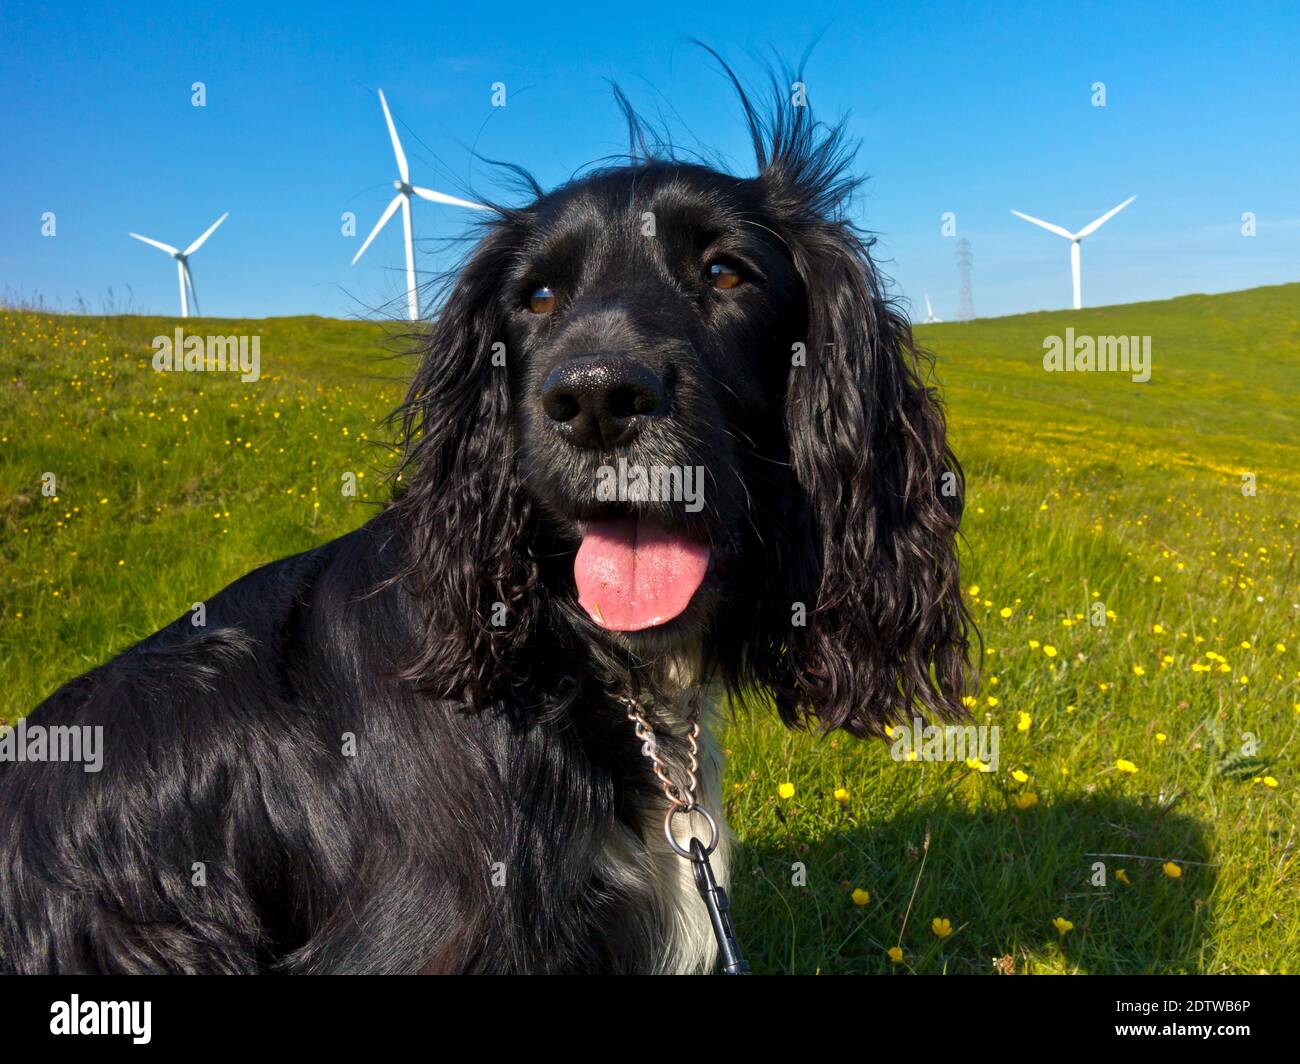 Lavoro cocker spaniel cane con capelli neri e petto bianco in campagna ansing in una calda giornata estiva con turbine eoliche in background. Foto Stock